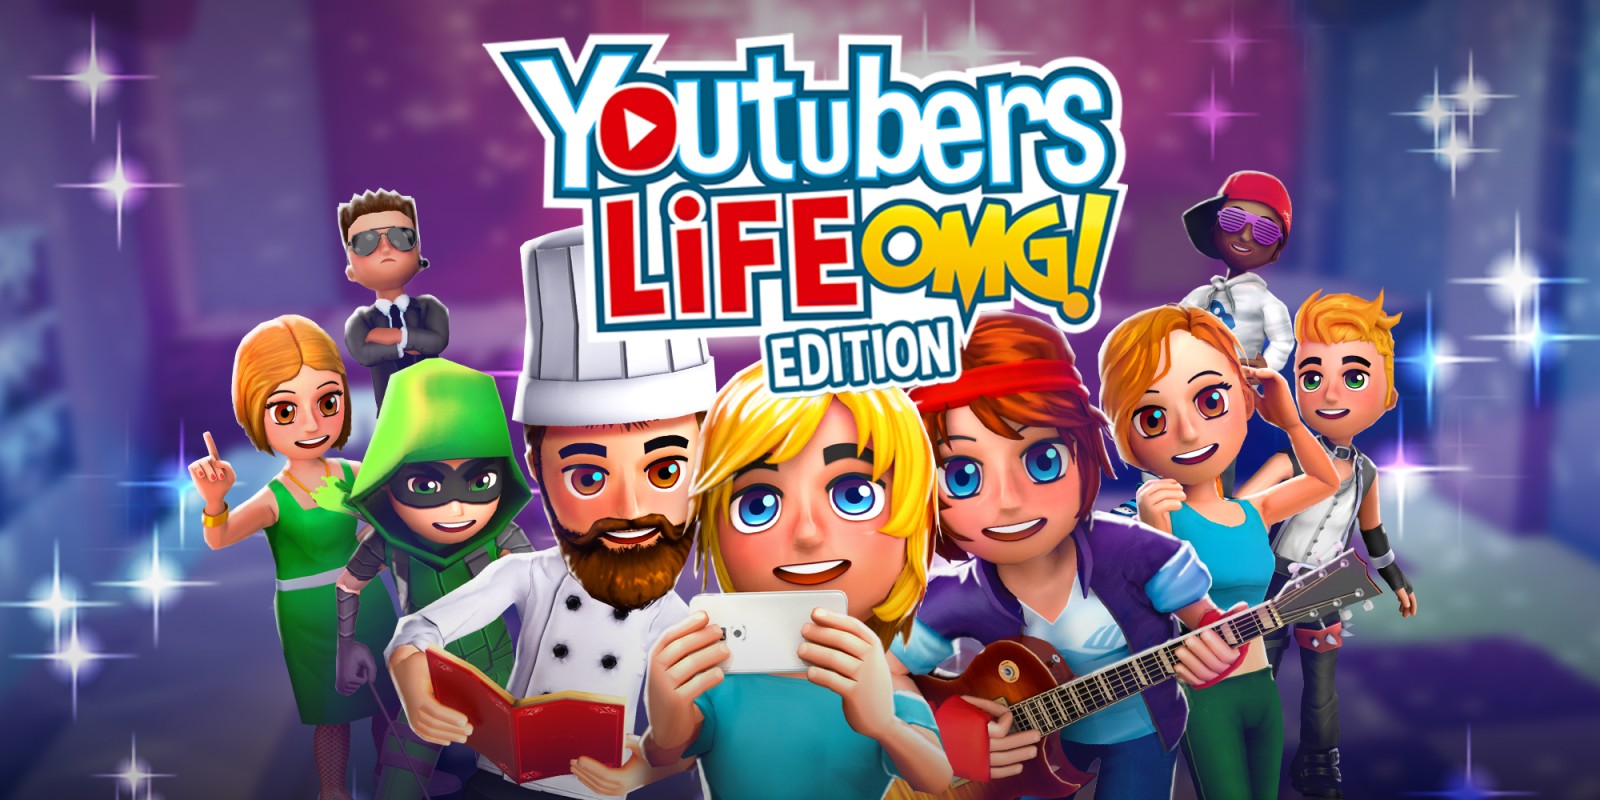 Youtubers Life OMG Edition | Programas descargables ...